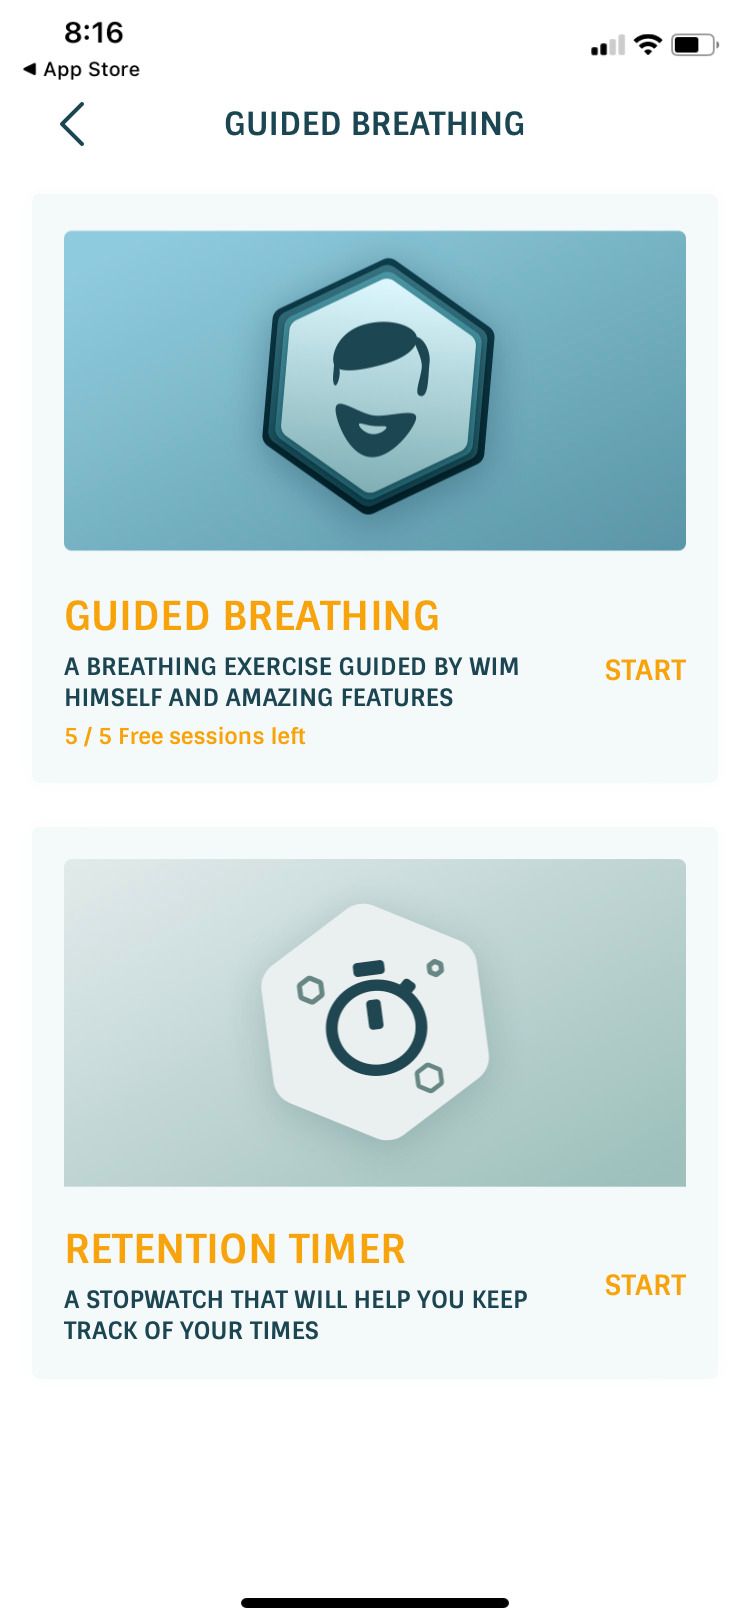 Wim Hof Method app guided breathing